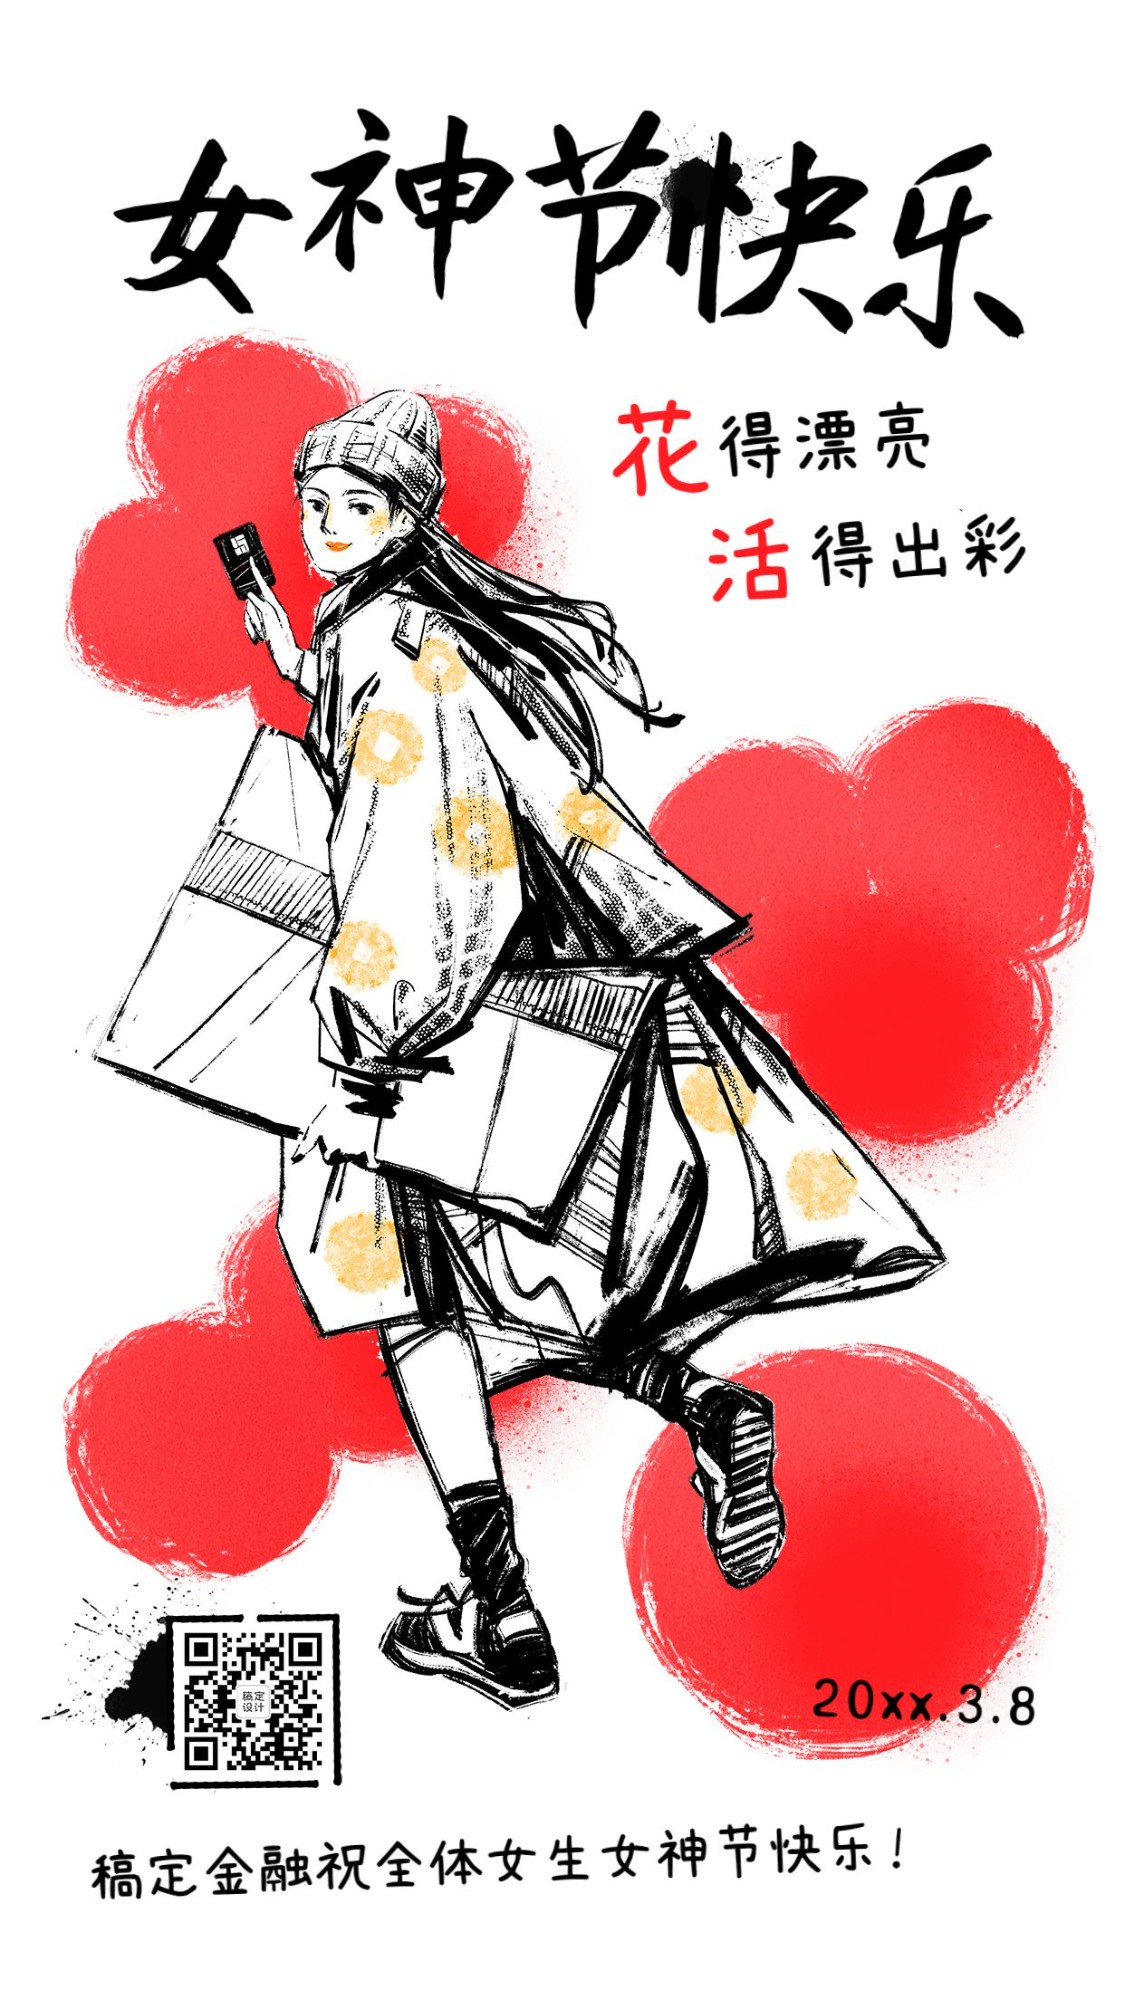 三八妇女节女神节金融保险节日祝福干油墨创意插画海报预览效果